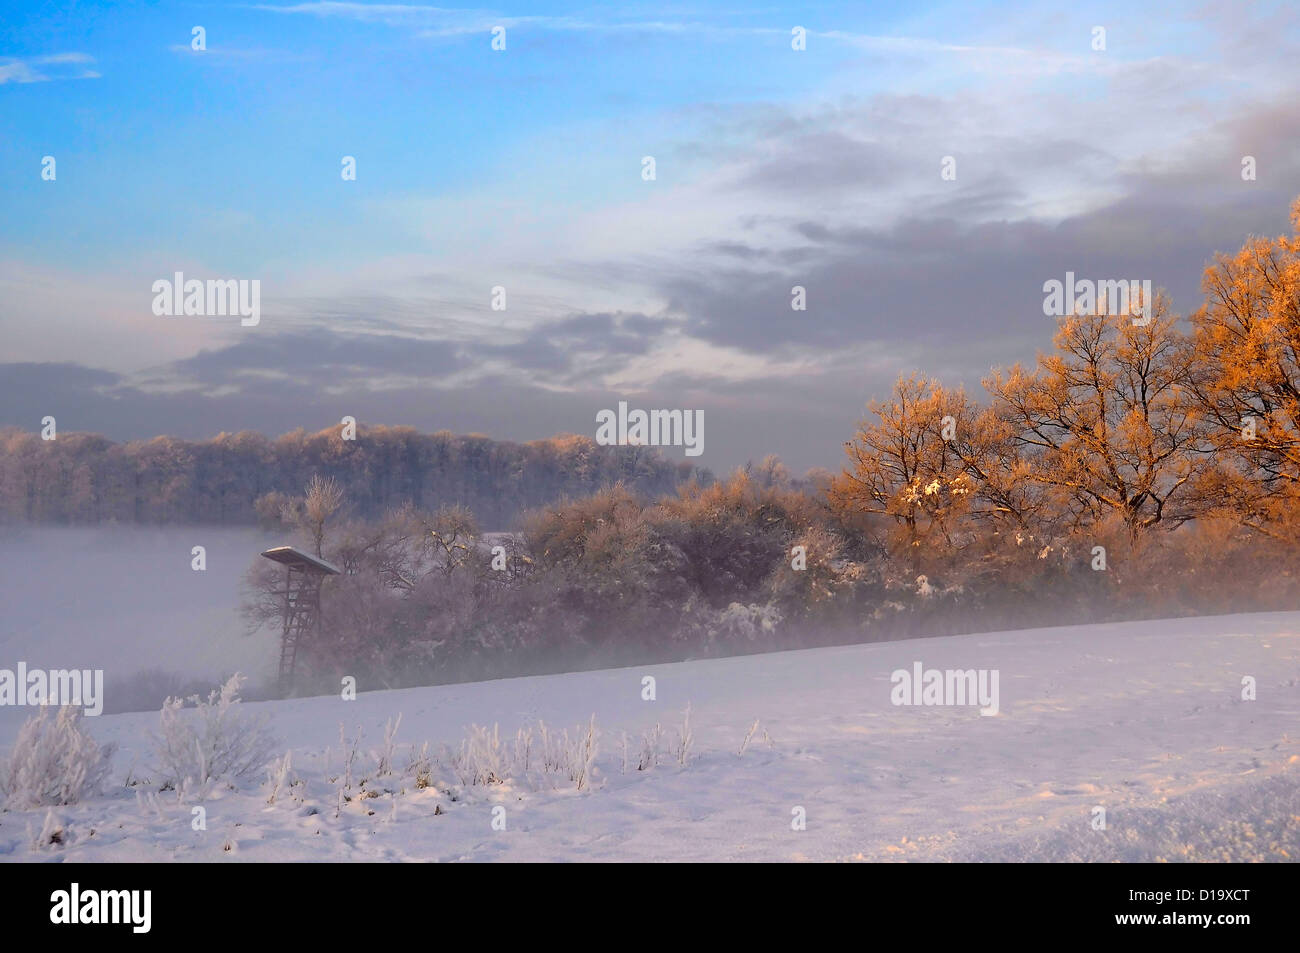 Sunrise con neve a Maulbronn, Atmosfera mattutina, nebbia con neve, strada sterrata con neve e sole con i raggi, la neve e il paesaggio Foto Stock